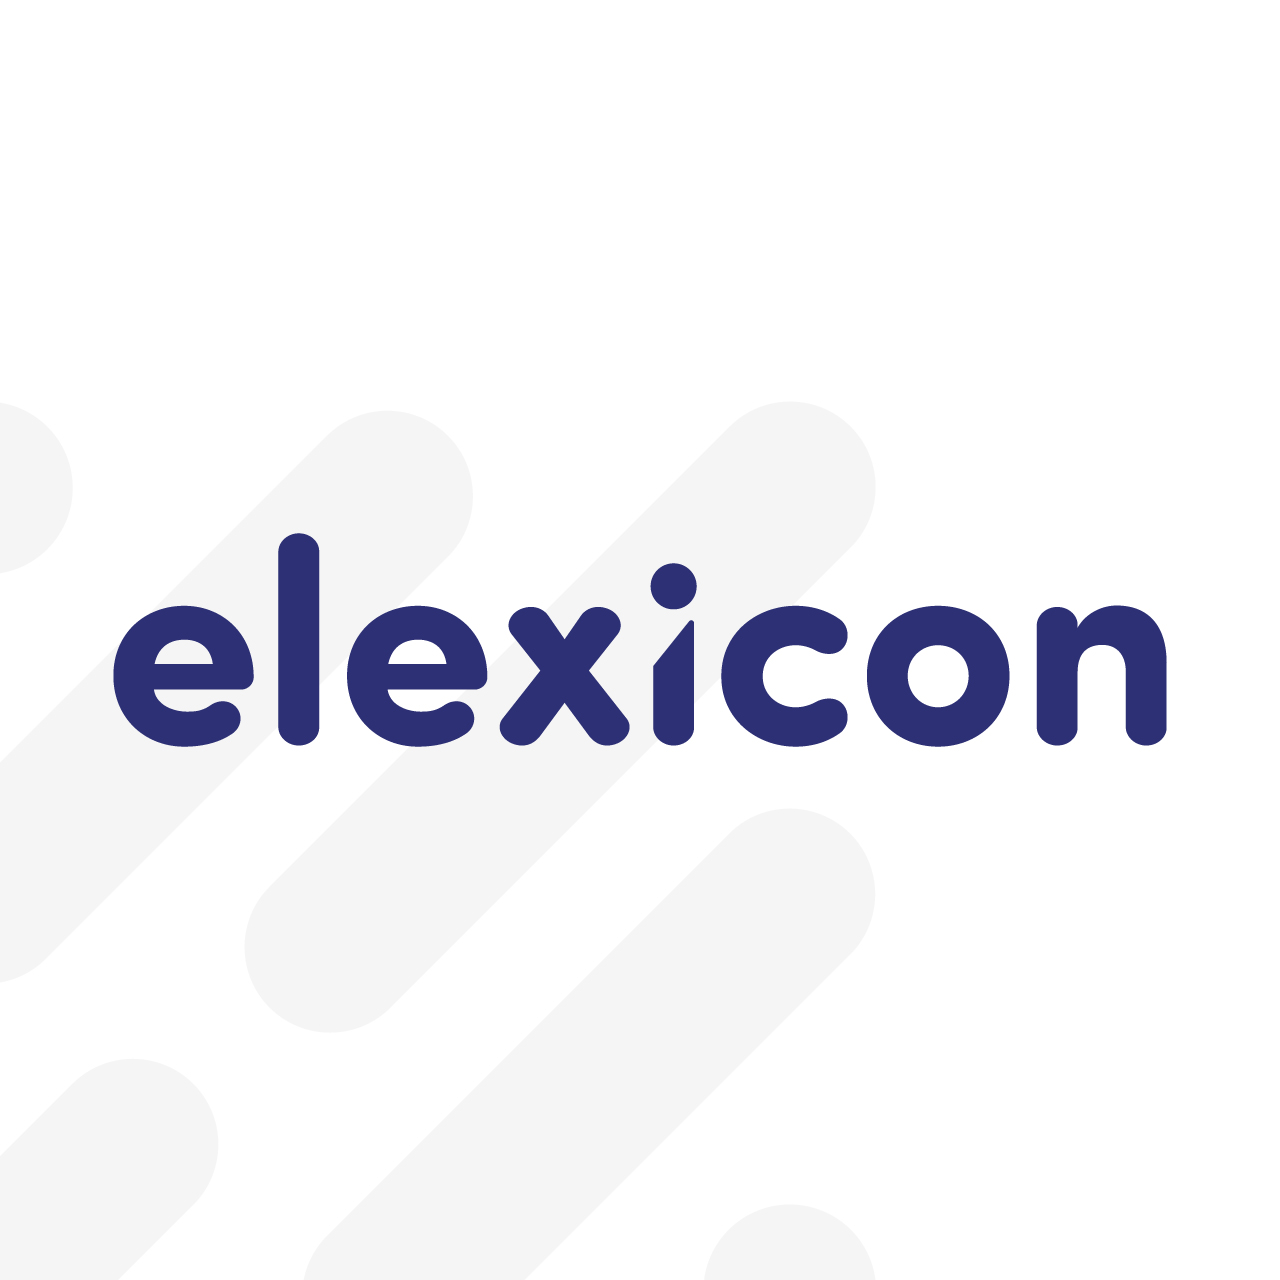 Elexicon logo